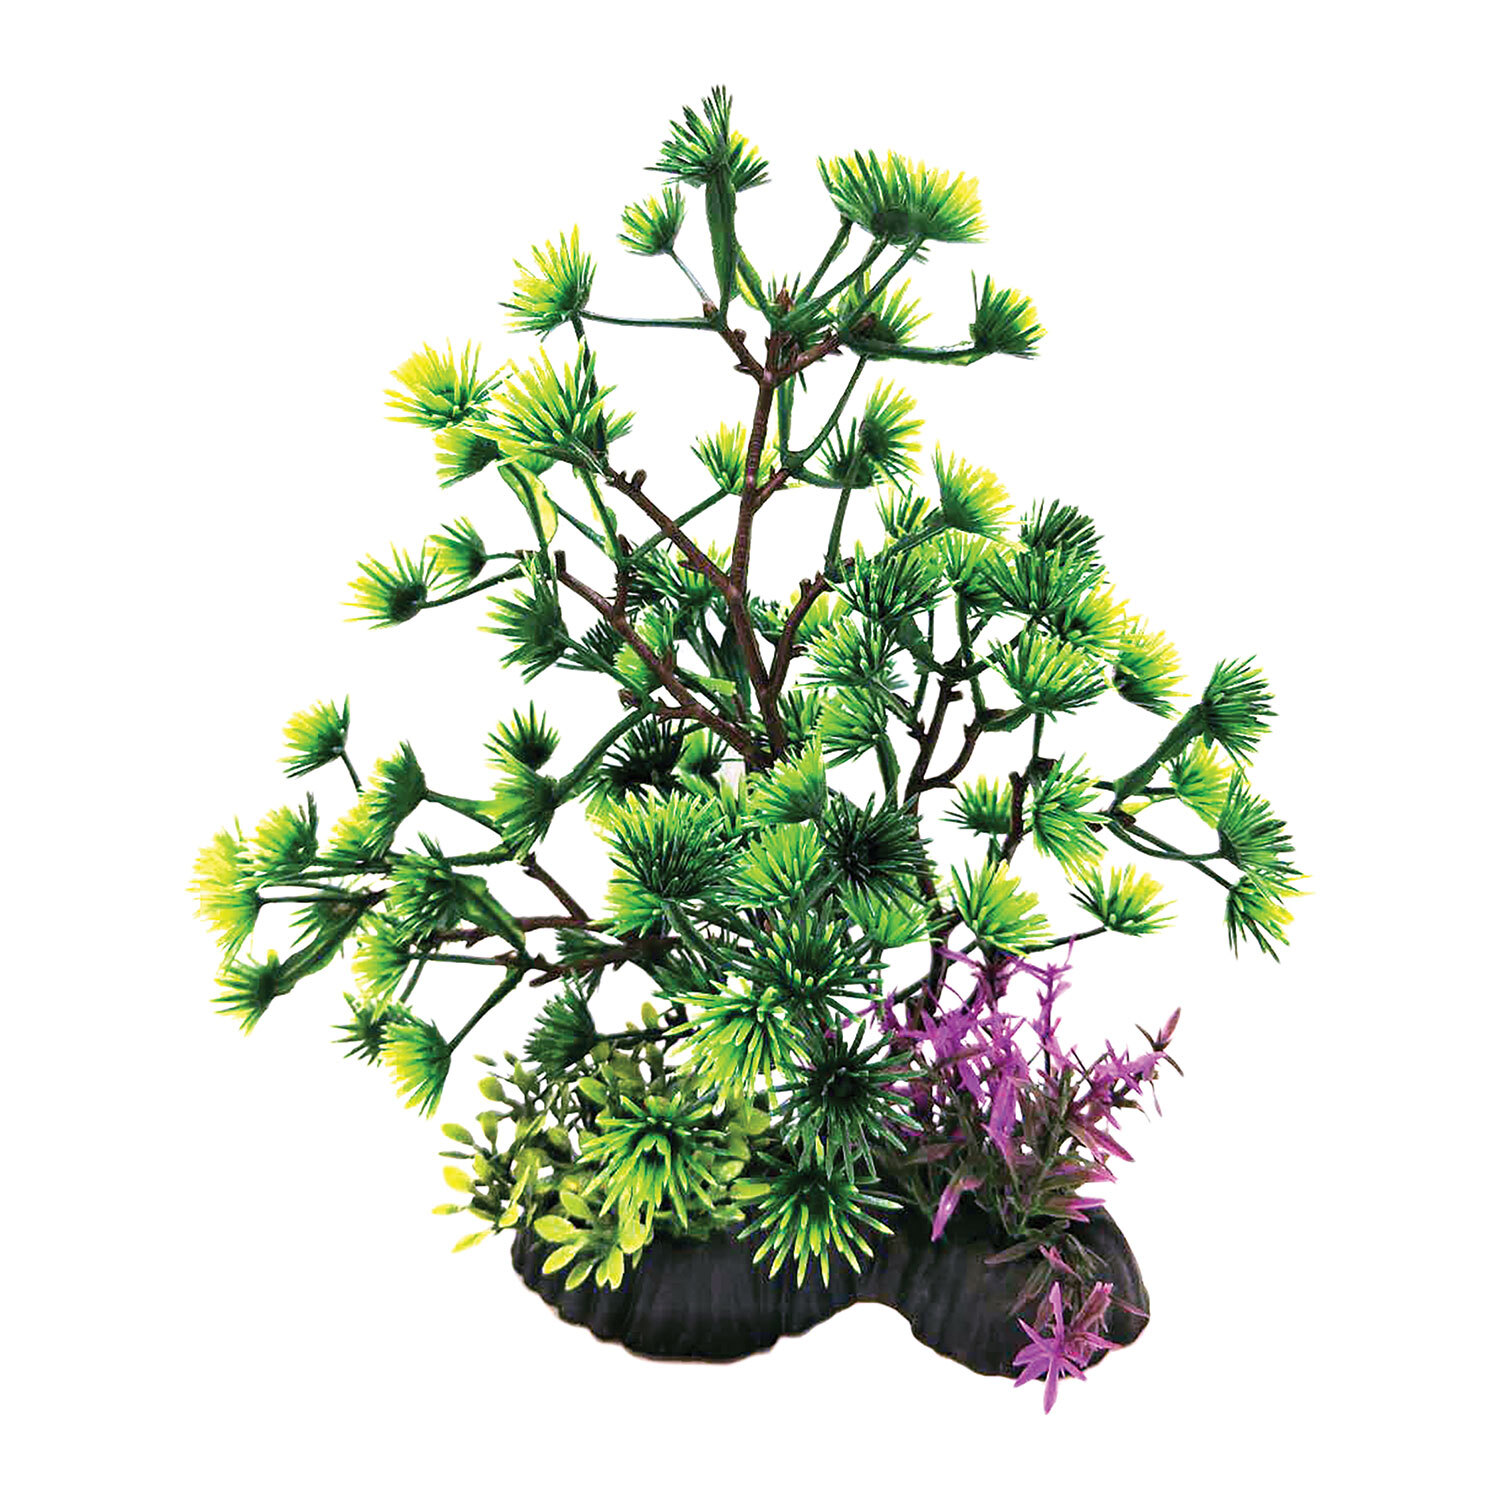 Penn-Plax Bonsai Plant - Green Image